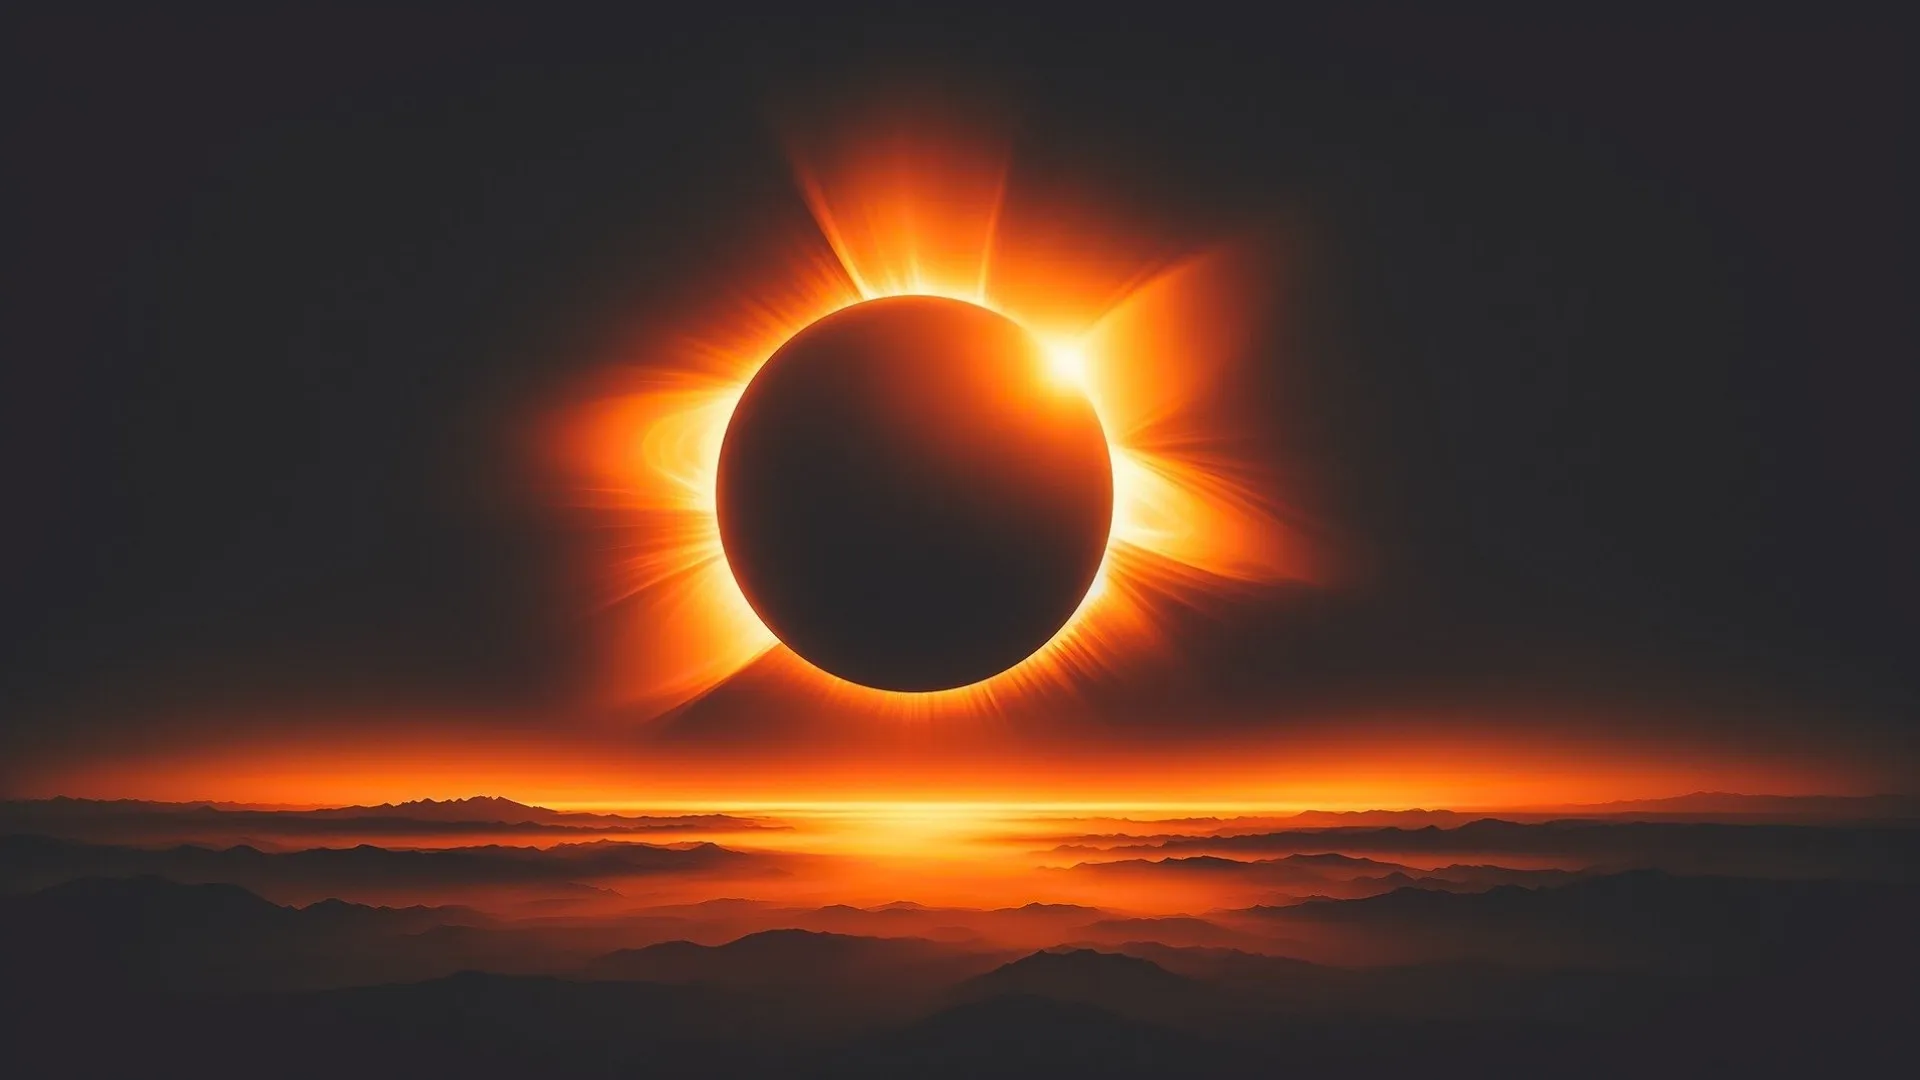 SMN prevé condiciones meteorológicas favorables para apreciar el eclipse solar